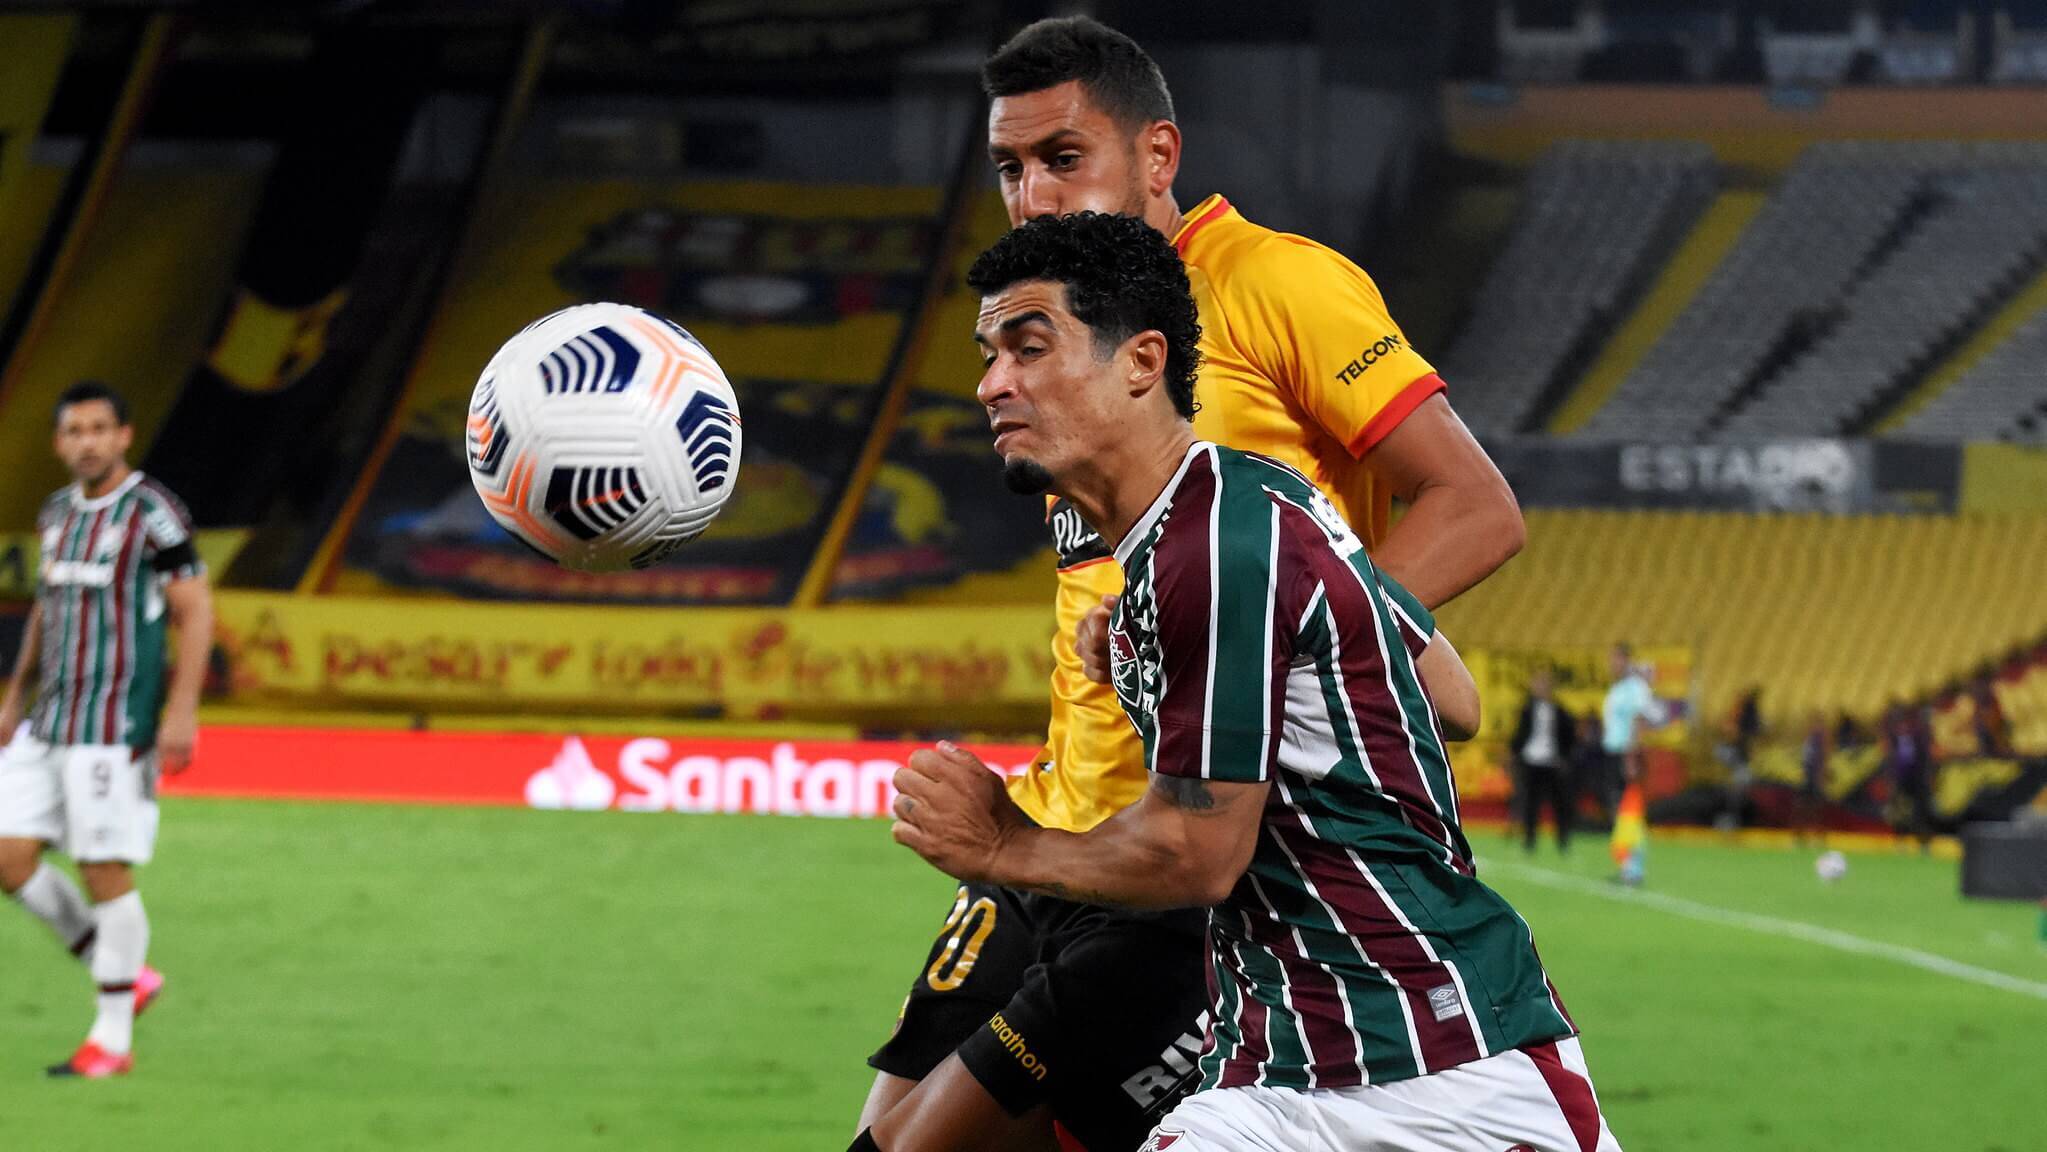 Foto: Mailson Santana / Fluminense